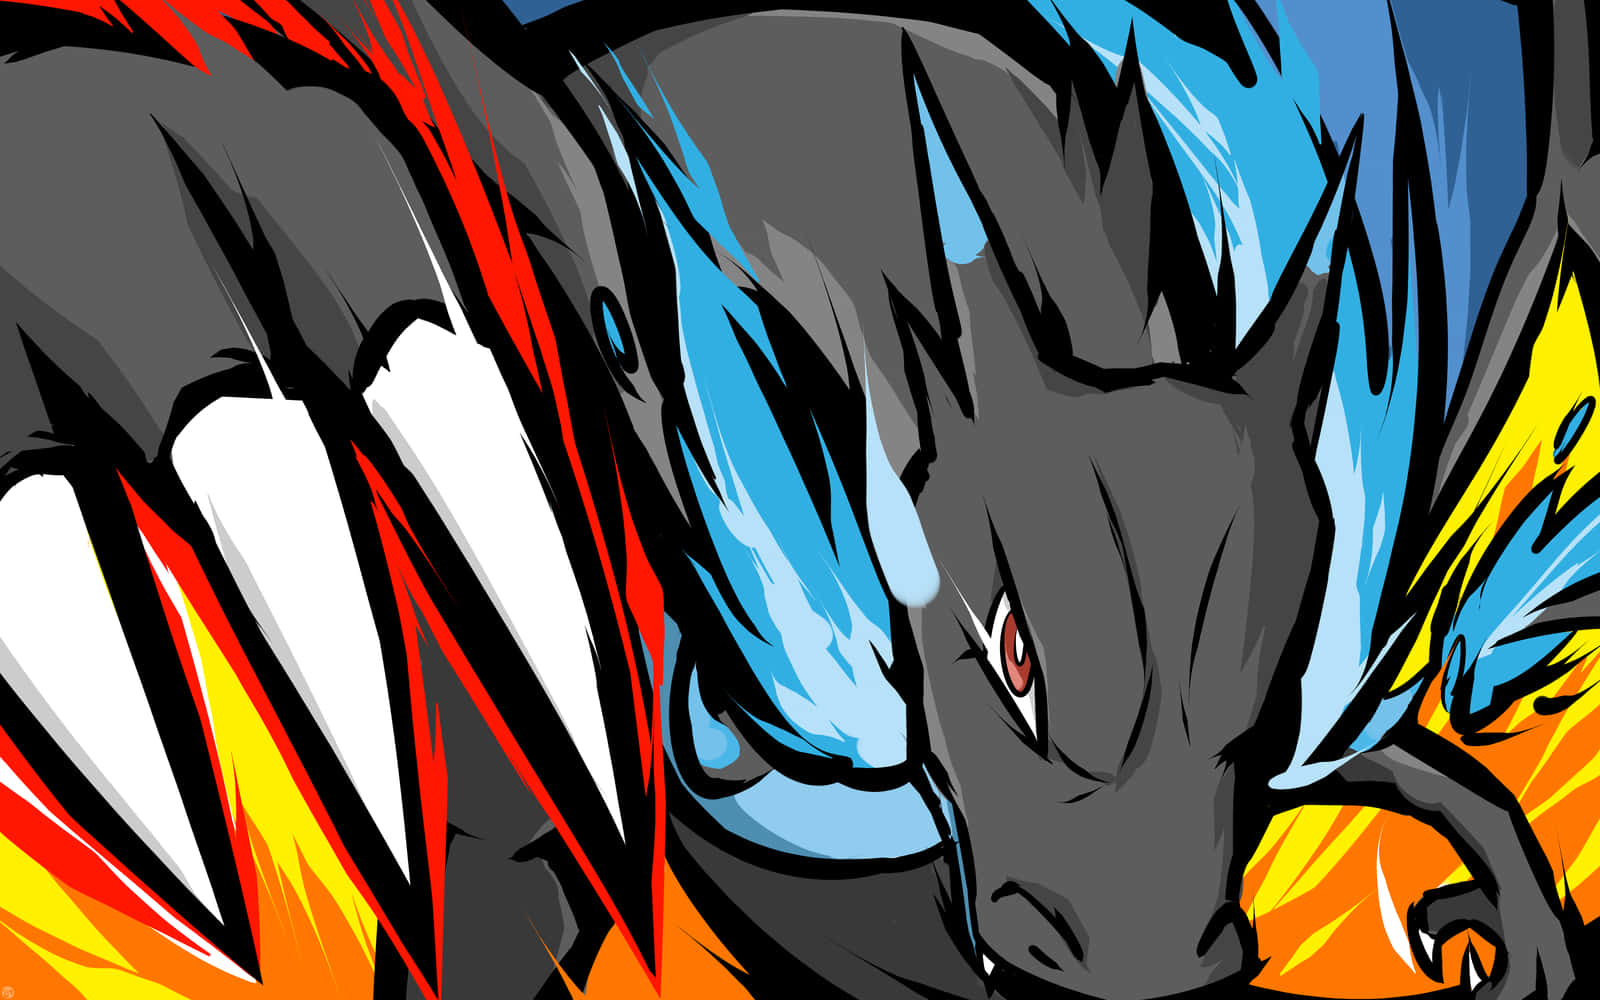 Elpoder De Fuego Dracónico De Charizard, El Pokémon. Fondo de pantalla